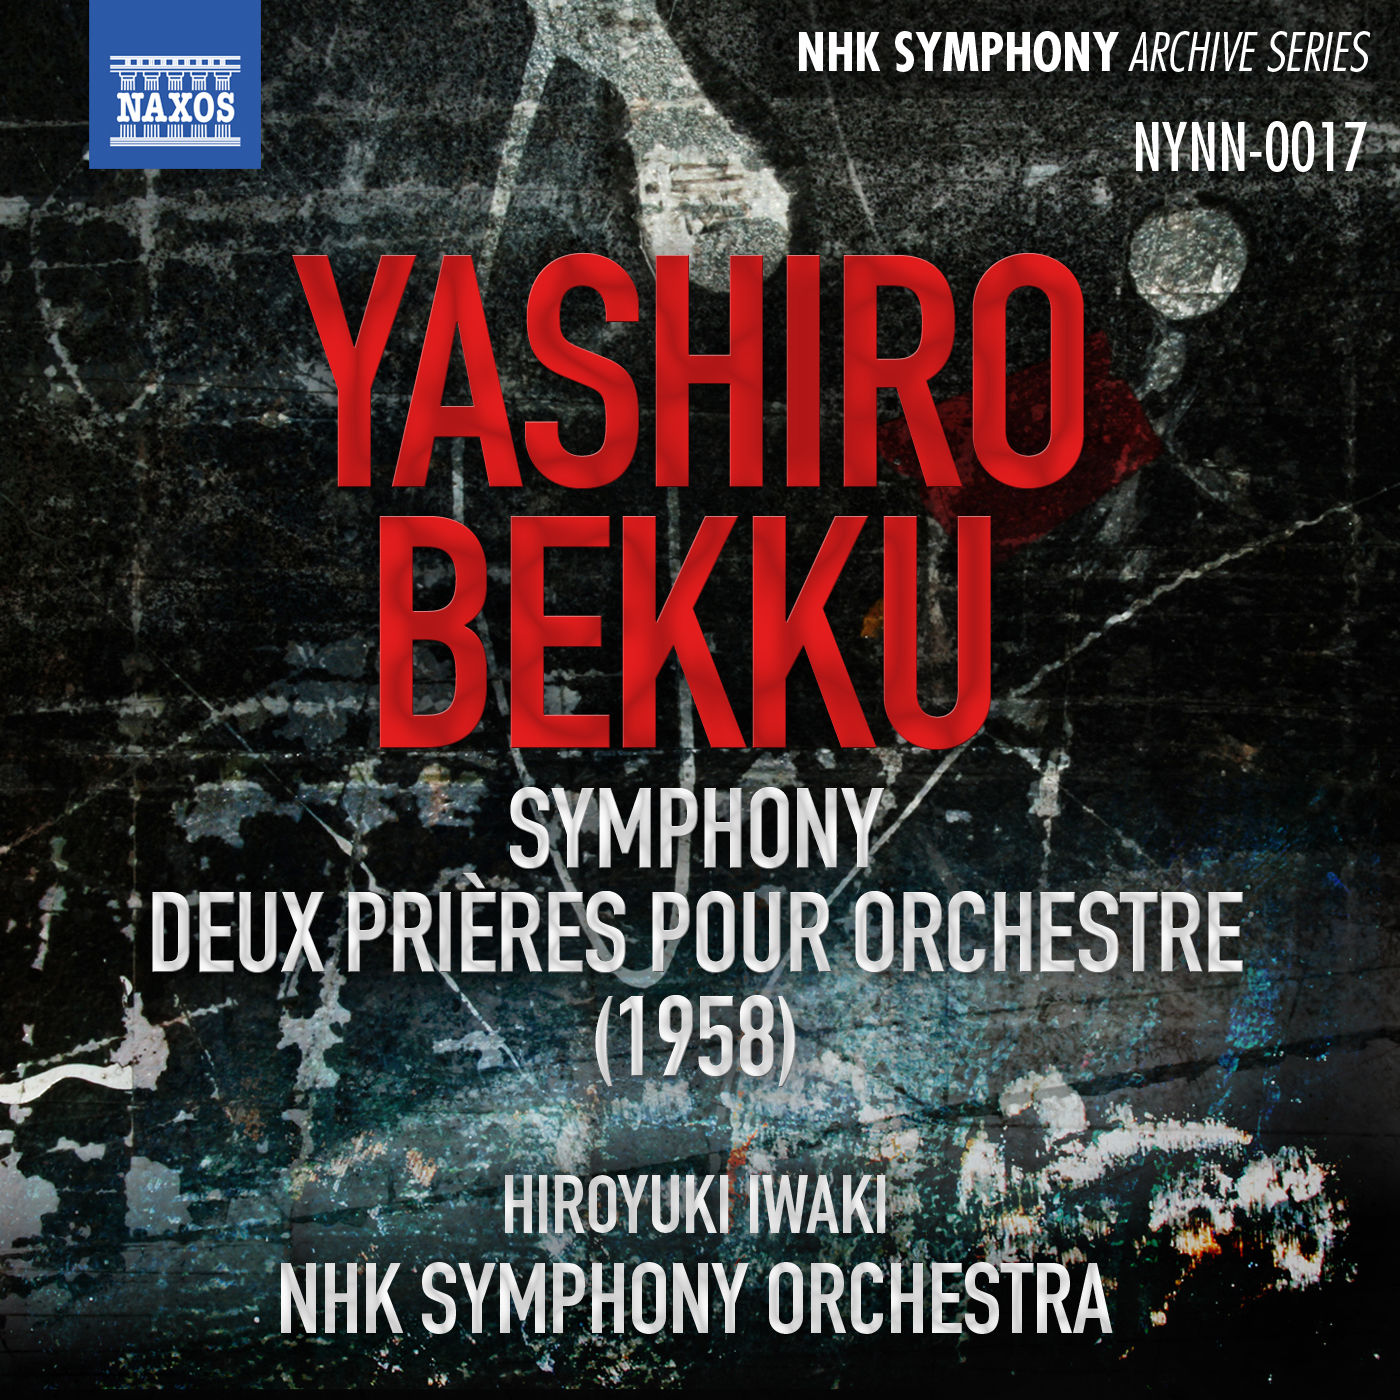 NHK Symphony Orchestra – Yashiro- Symphony – Bekku- 2 Prayers